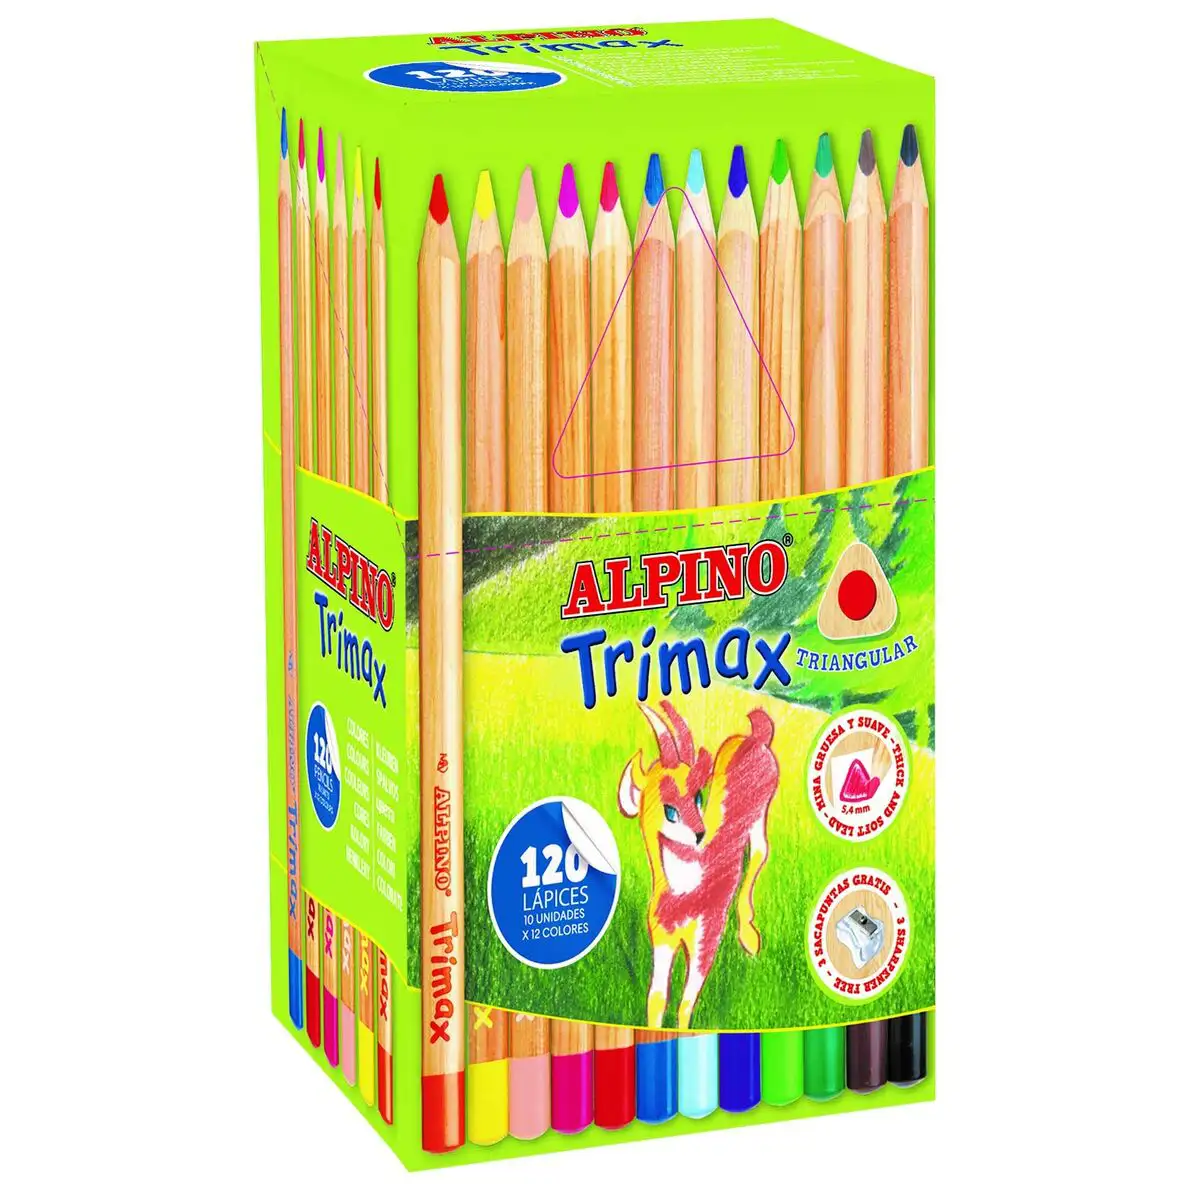 Crayons de couleur alpino trimax multicouleur 120 pieces_7045. Bienvenue sur DIAYTAR SENEGAL - Votre Galerie Shopping Personnalisée. Découvrez un monde de produits diversifiés qui expriment votre style unique et votre passion pour la qualité.